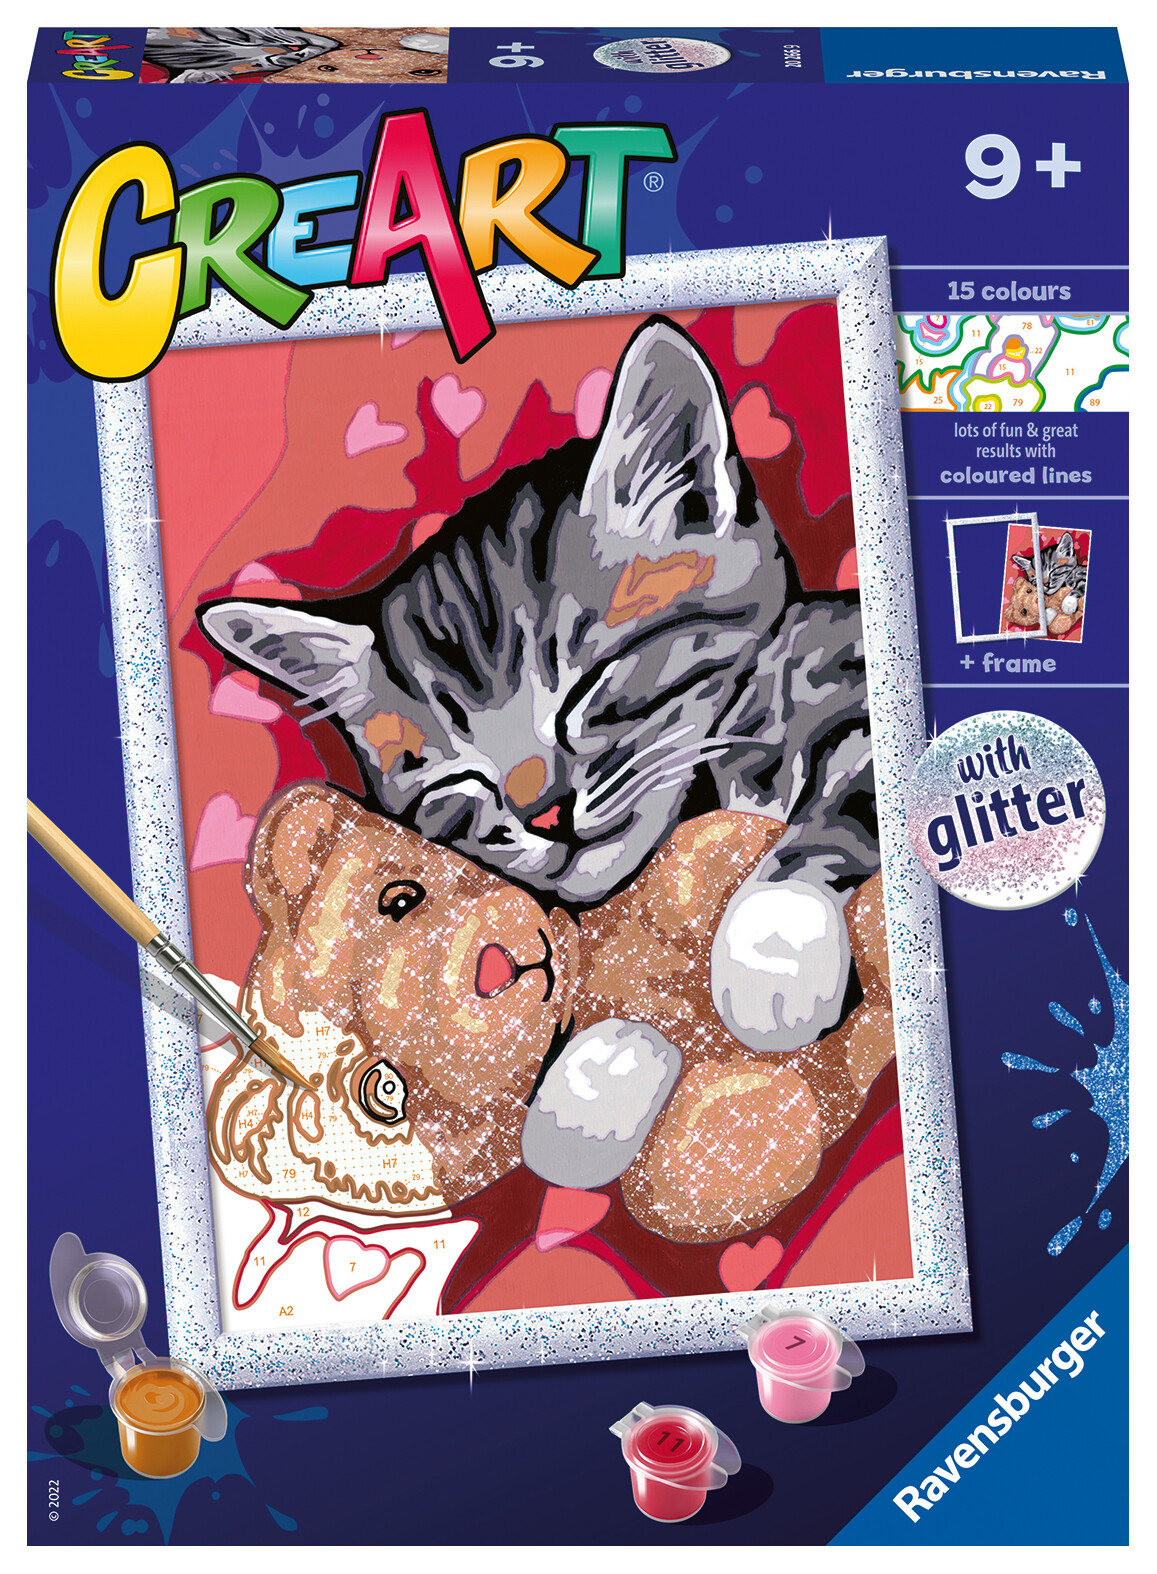 Ravensburger - creart serie d: gattino e il suo orsetto, kit per dipingere  con i numeri, contiene una tavola prestampata, pennello, colori e  accessori, gioco creativo per bambini 9+ anni - Toys Center